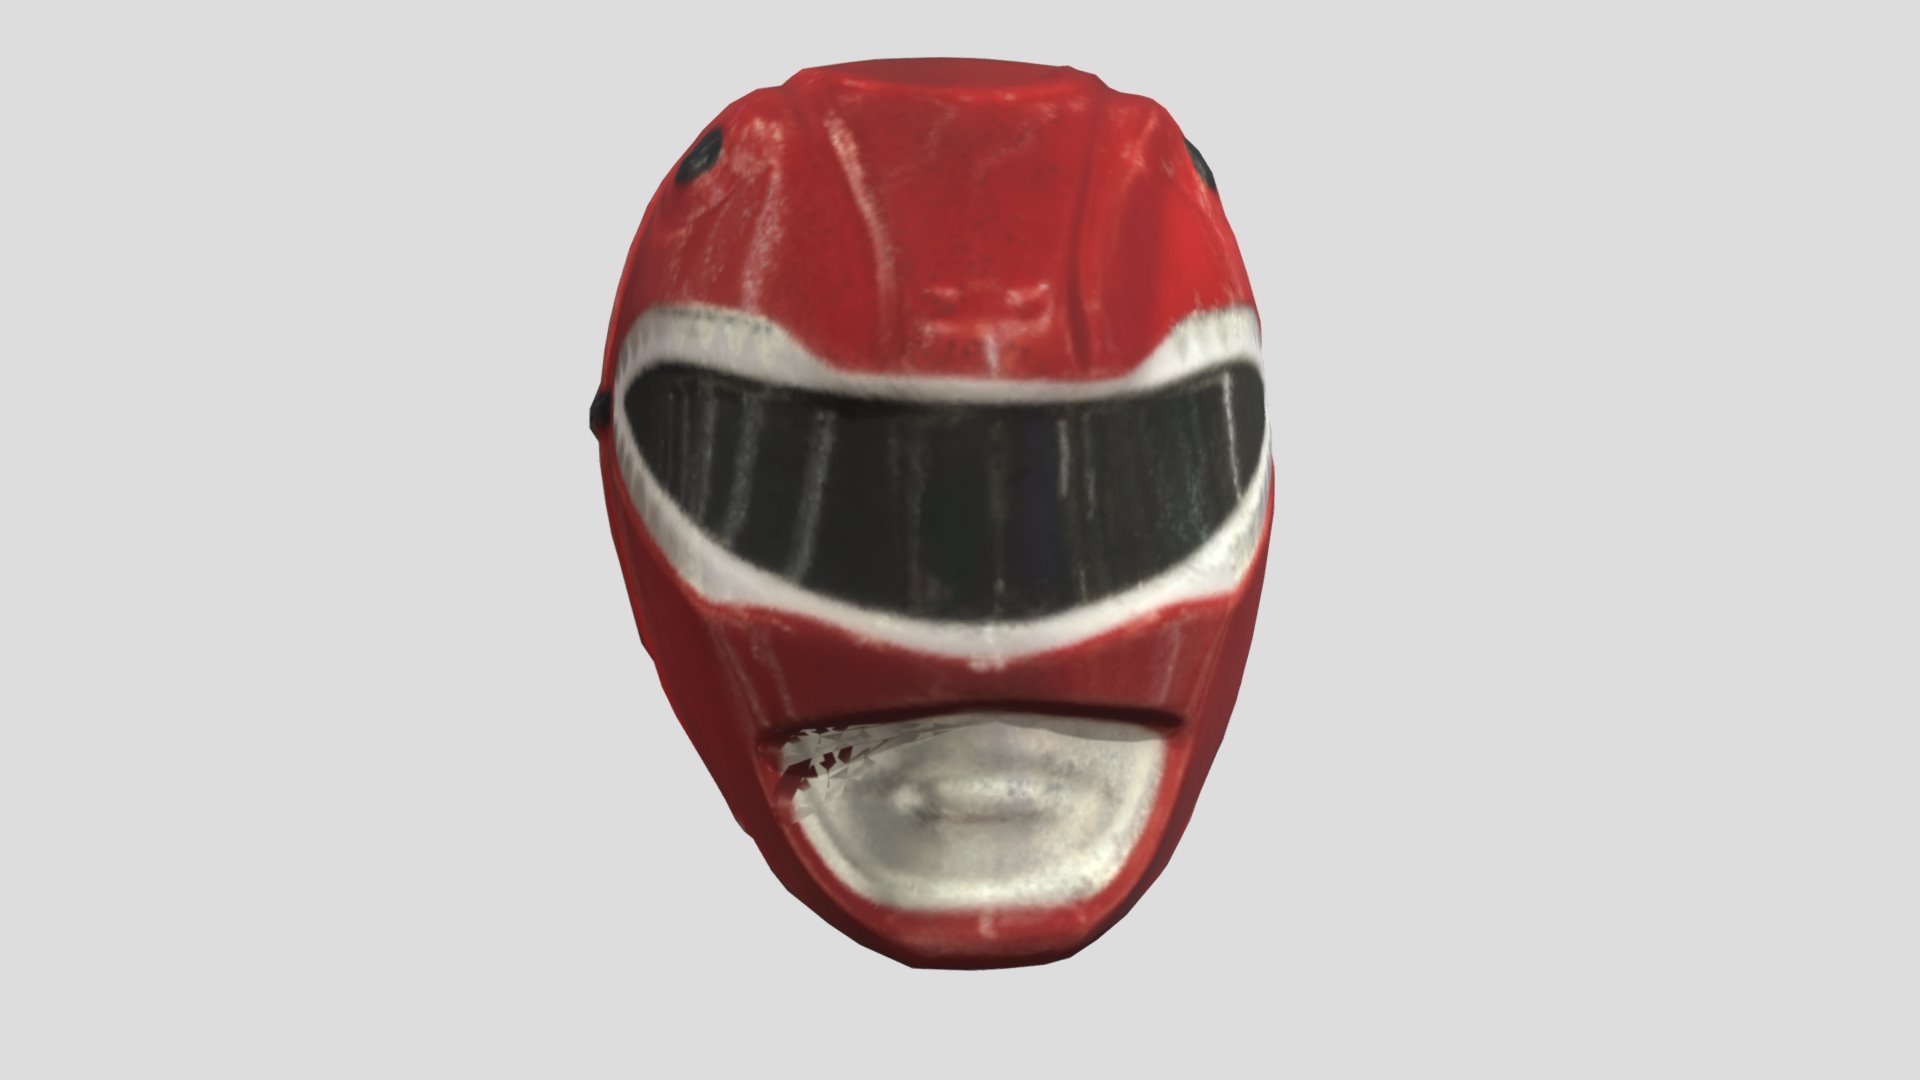 Power Rangers Mask 2